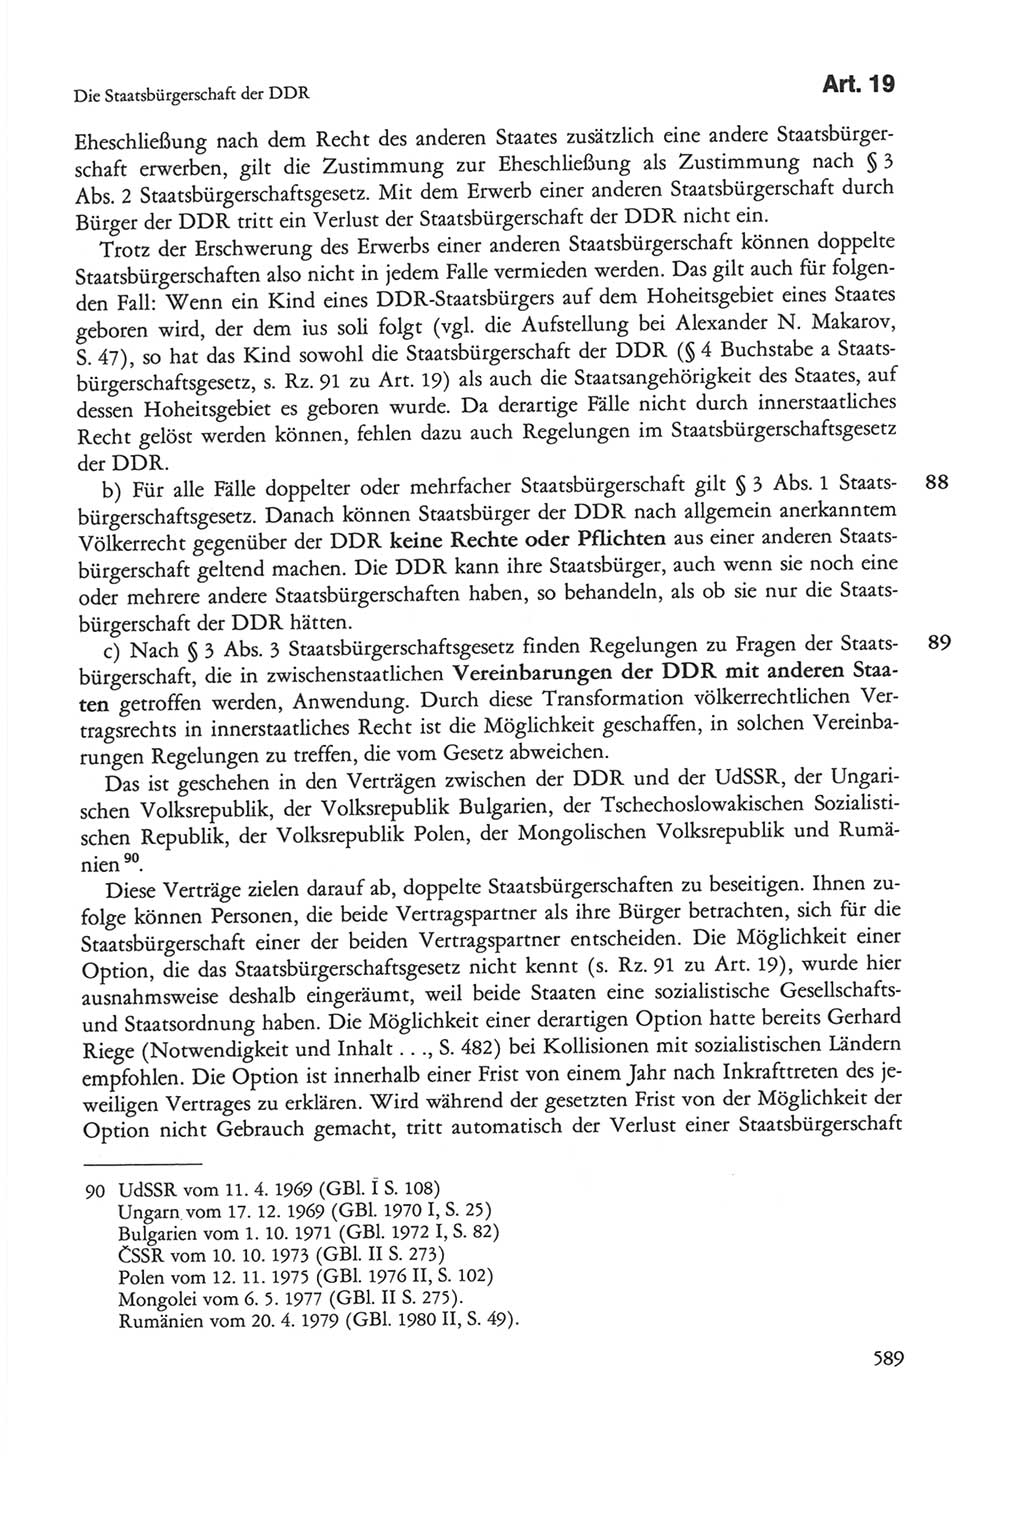 Die sozialistische Verfassung der Deutschen Demokratischen Republik (DDR), Kommentar mit einem Nachtrag 1997, Seite 589 (Soz. Verf. DDR Komm. Nachtr. 1997, S. 589)